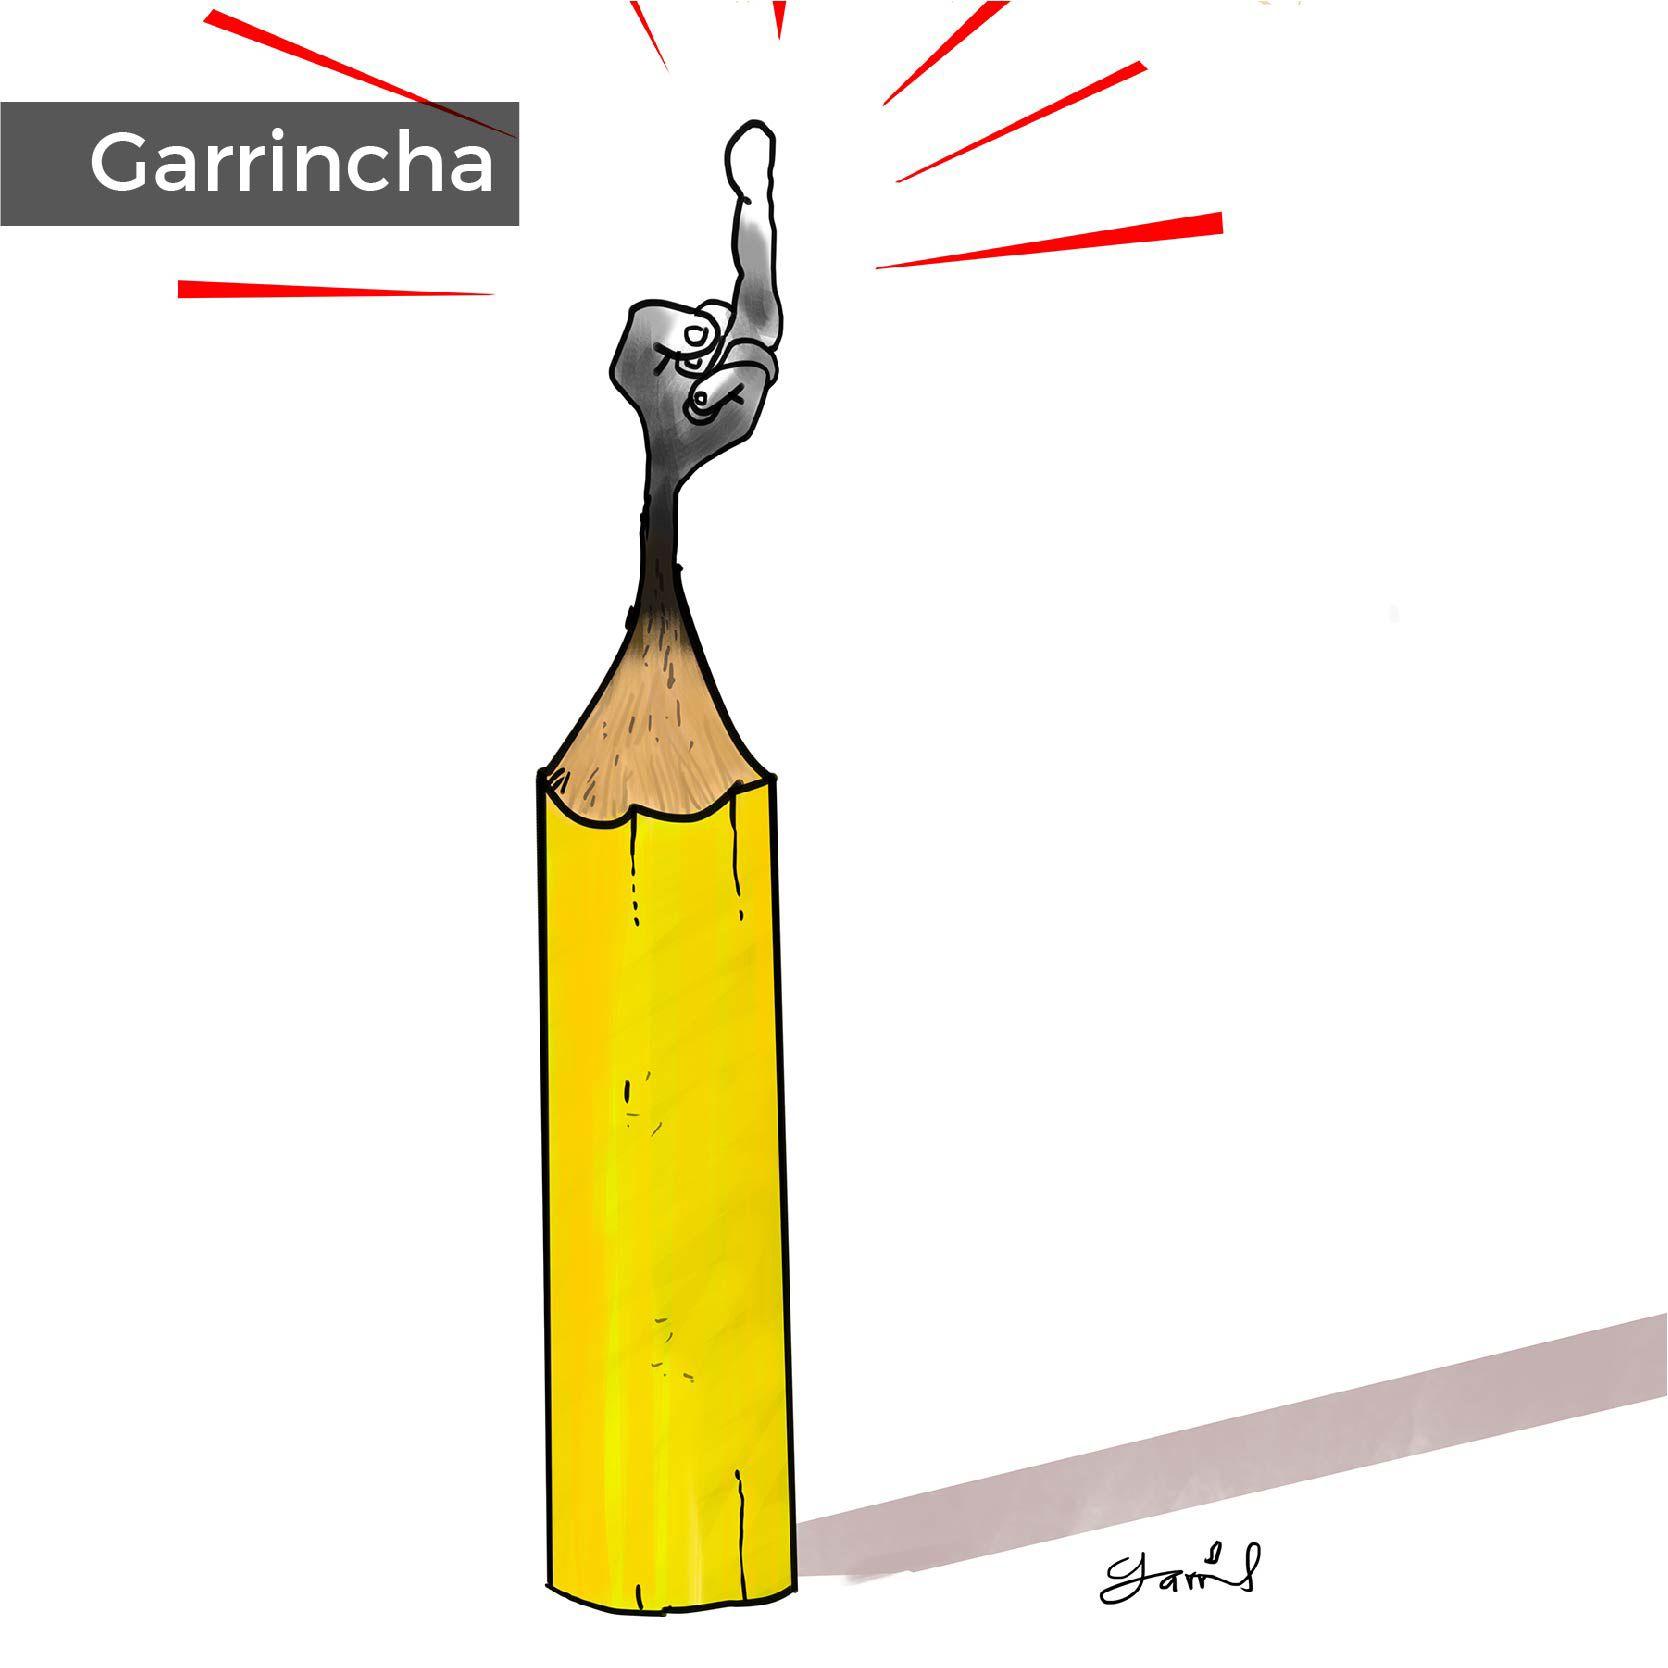 22-09-Garrincha-CENSURA2.jpg